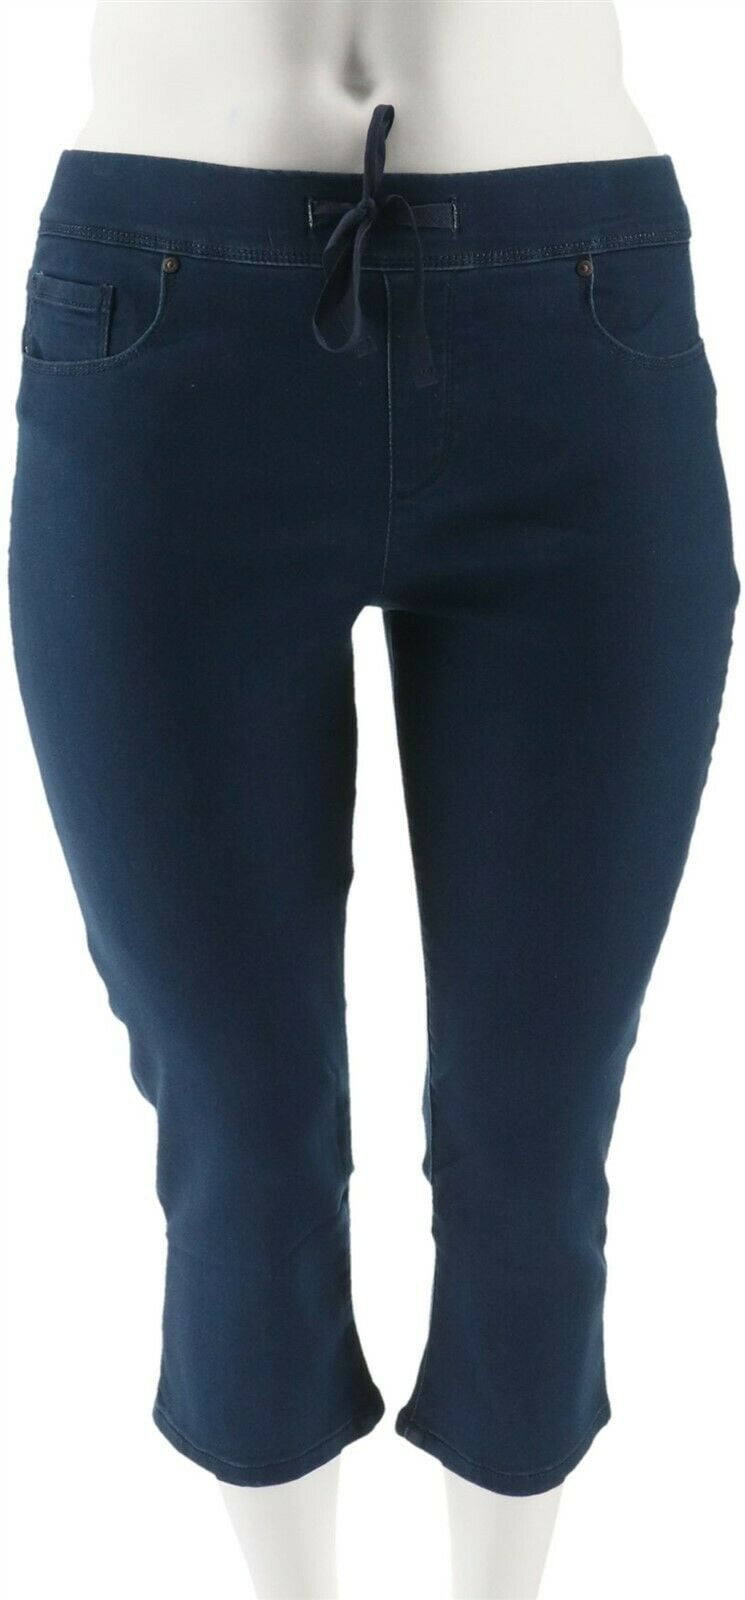 Martha Stewart Knit Denim Pull-On Capri Jeans Women's A309326 - Walmart.com